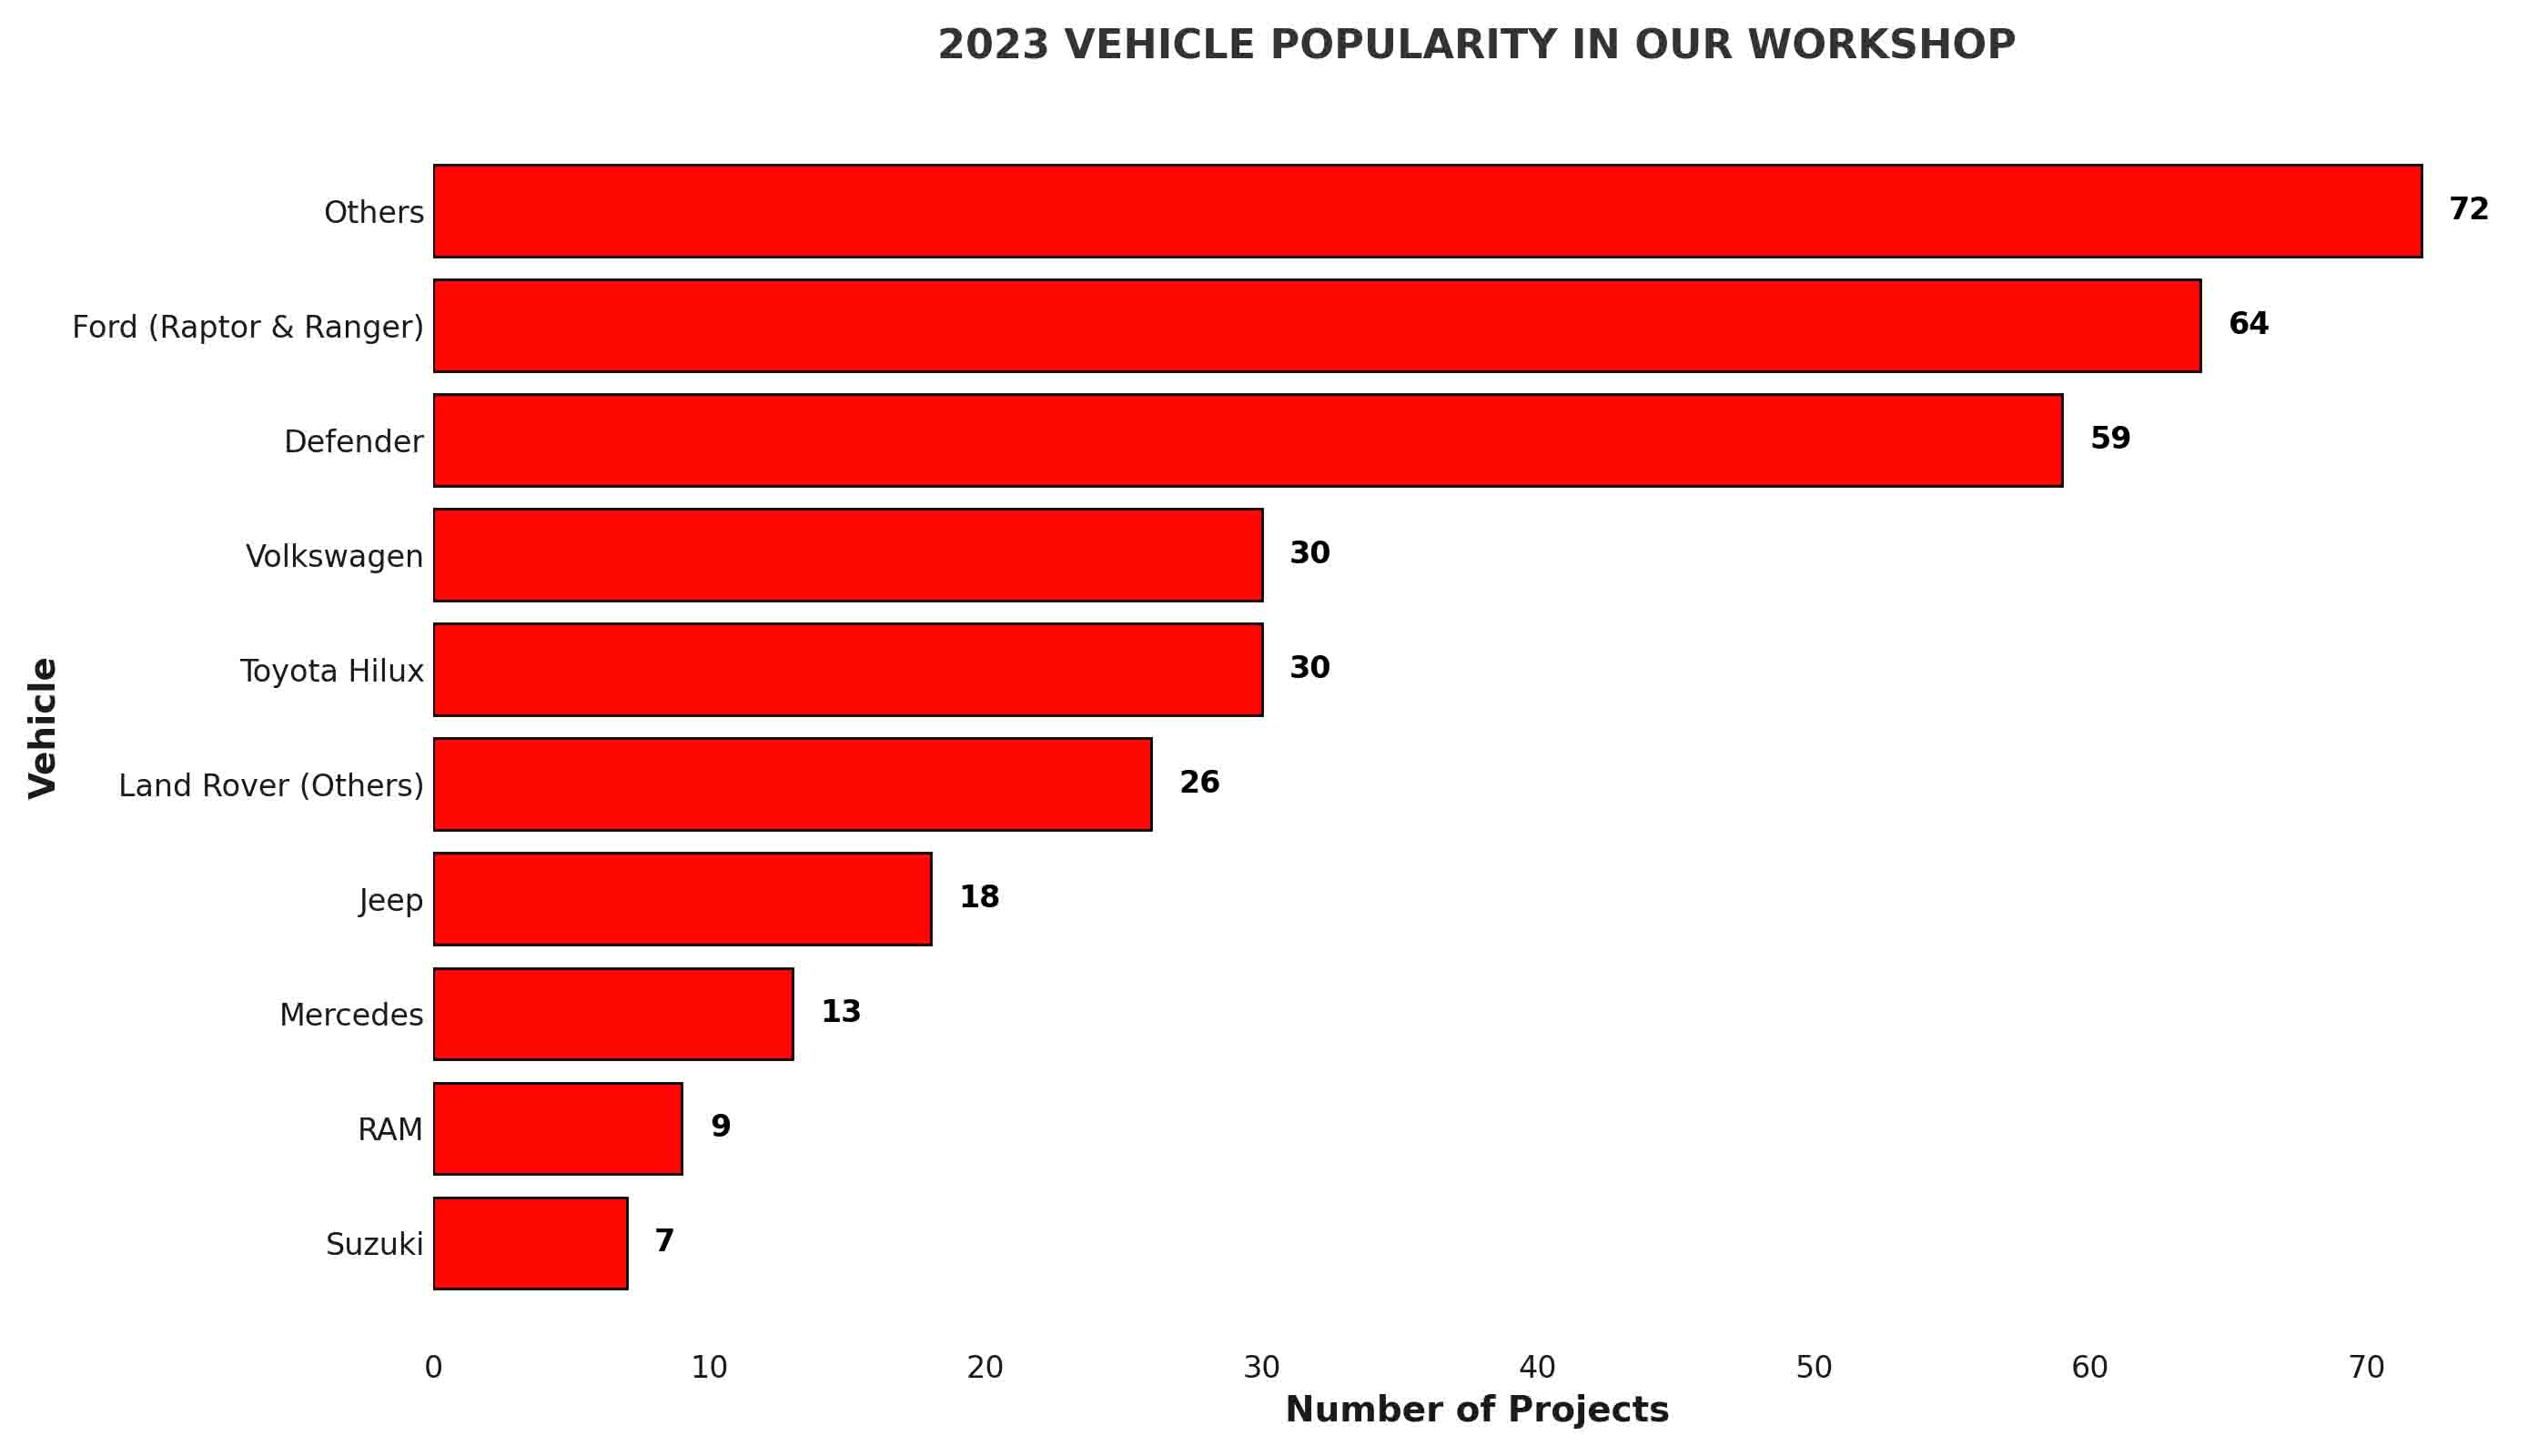 Grafiek van populaire voertuigen in de werkplaats van Adventech.